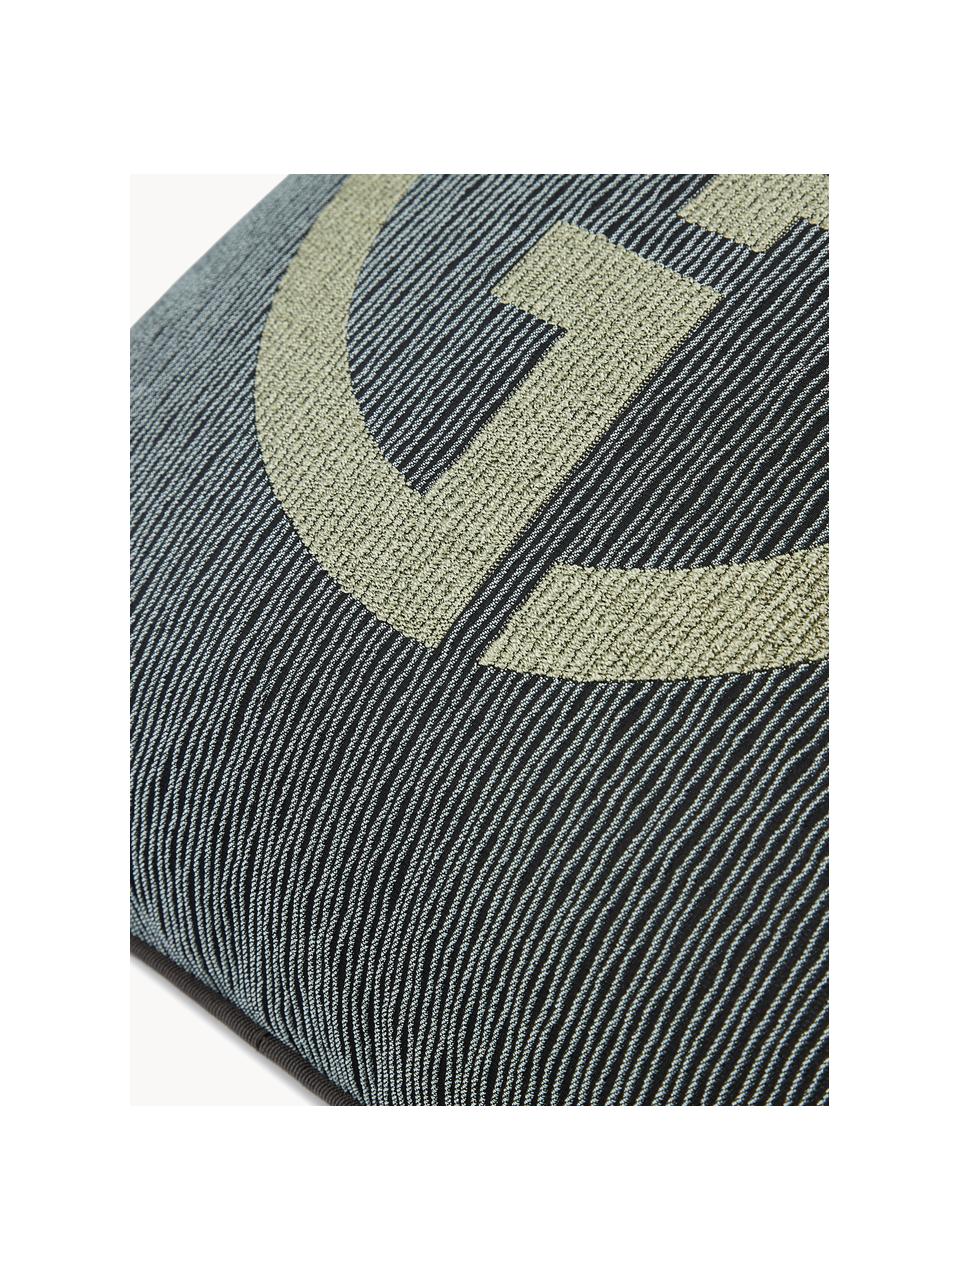 Cojín decorativo con logo Giorgio Armani Janette, Funda: 44 % viscosa, 24 % algodó, Gris antracita, verde oliva, An 40 x L 40 cm